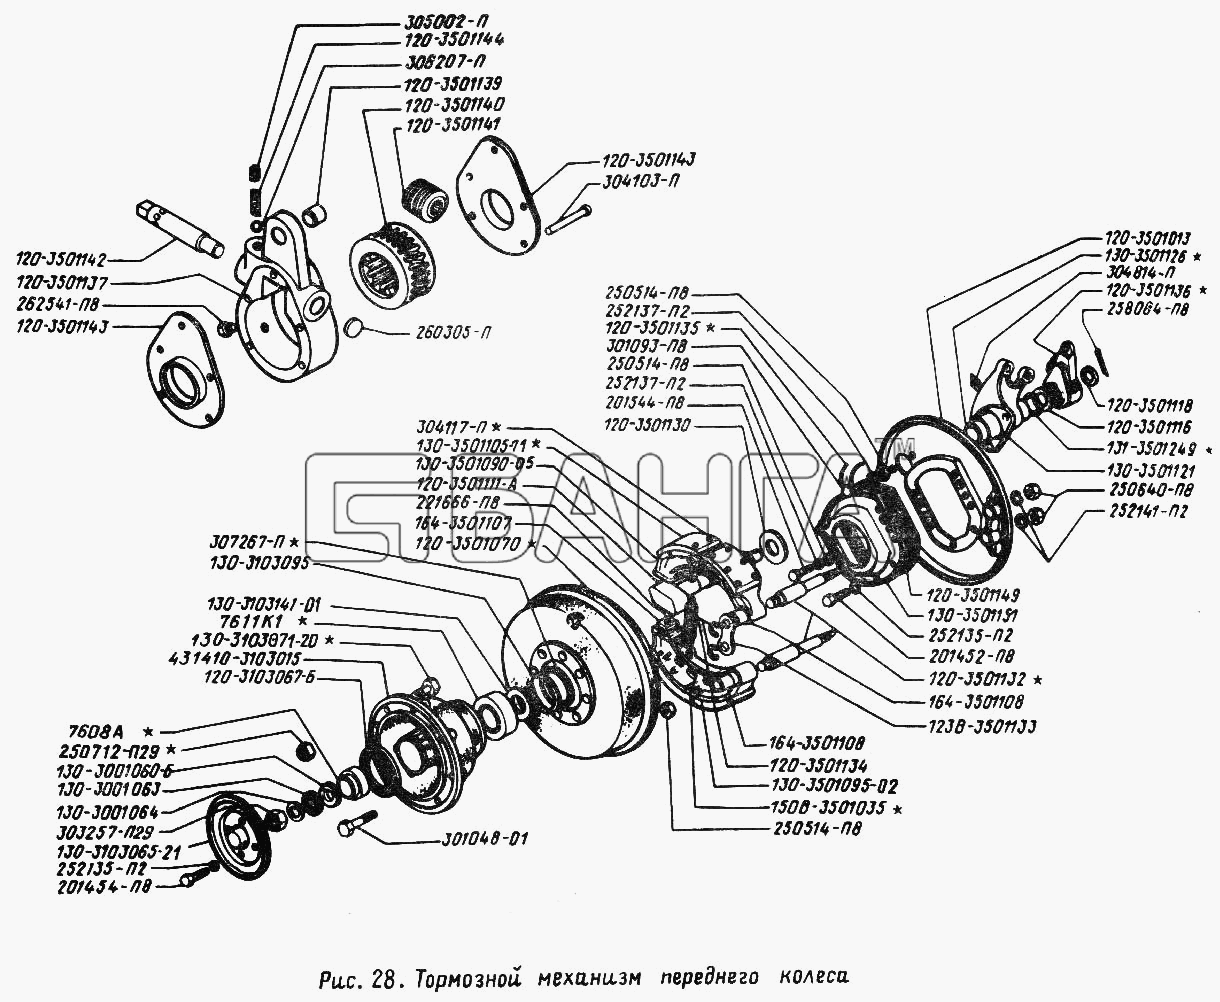 ЗИЛ ЗИЛ 431410 (130) Схема Тормозной механизм переднего колеса-54